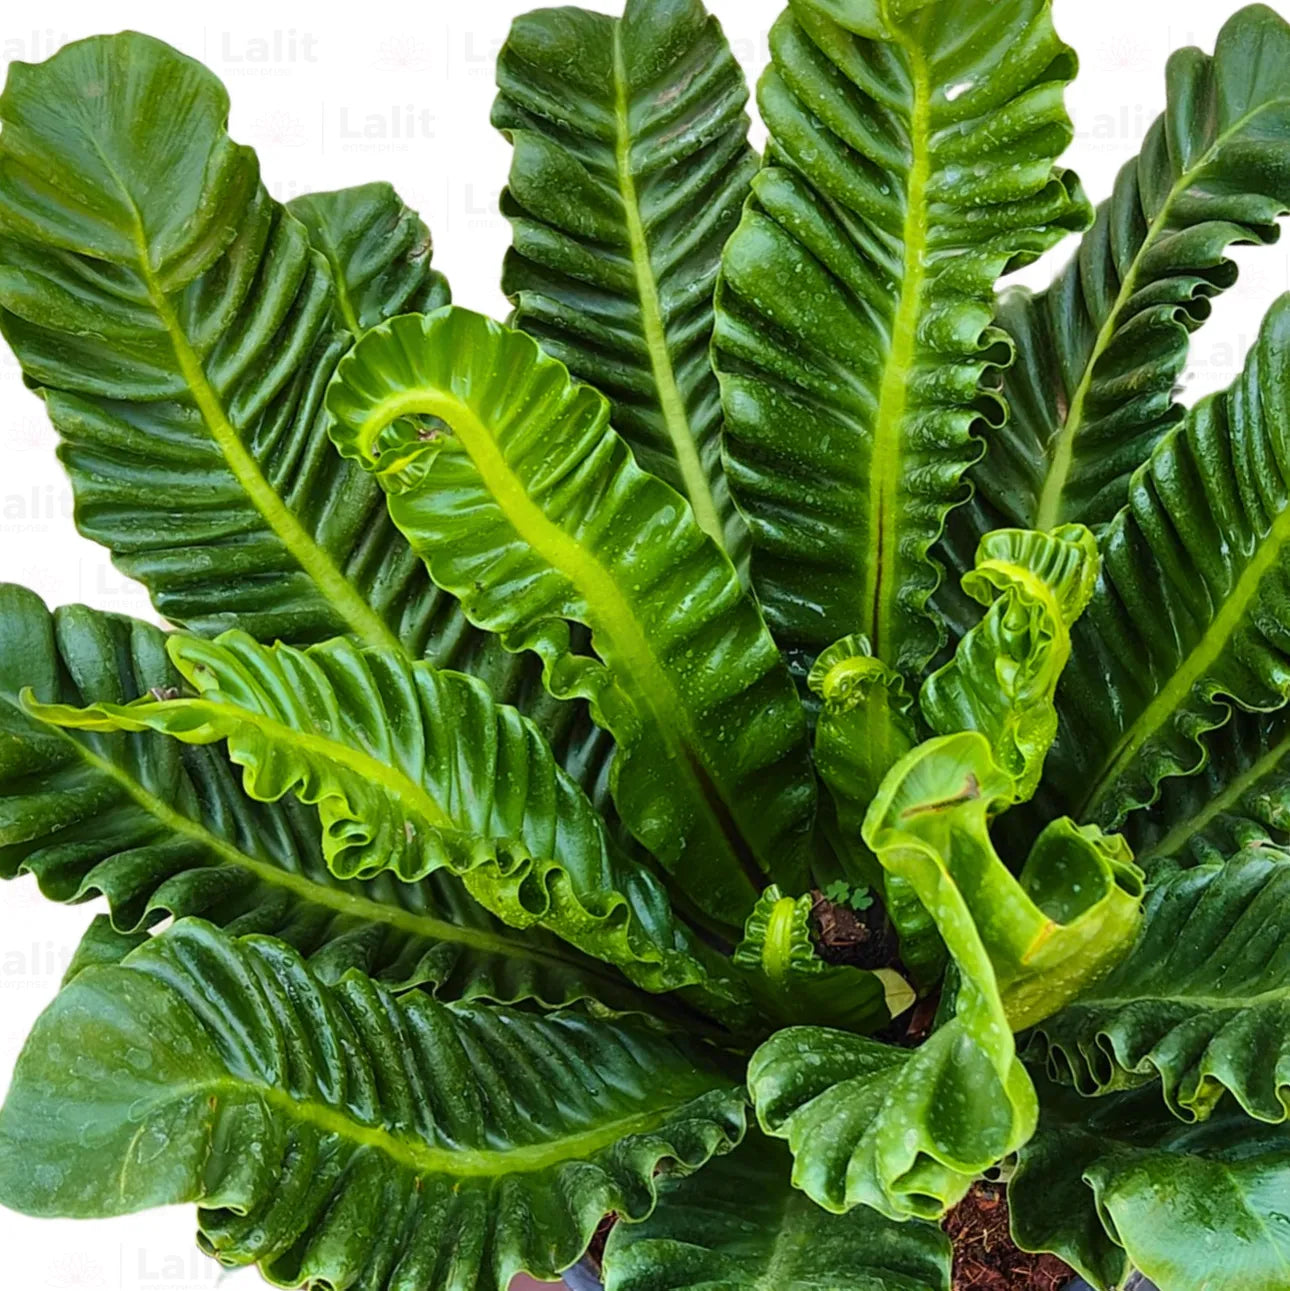 Buy Cobra Fern (Asplenium Nidus fern) - Plant Online at Lalitenterprise